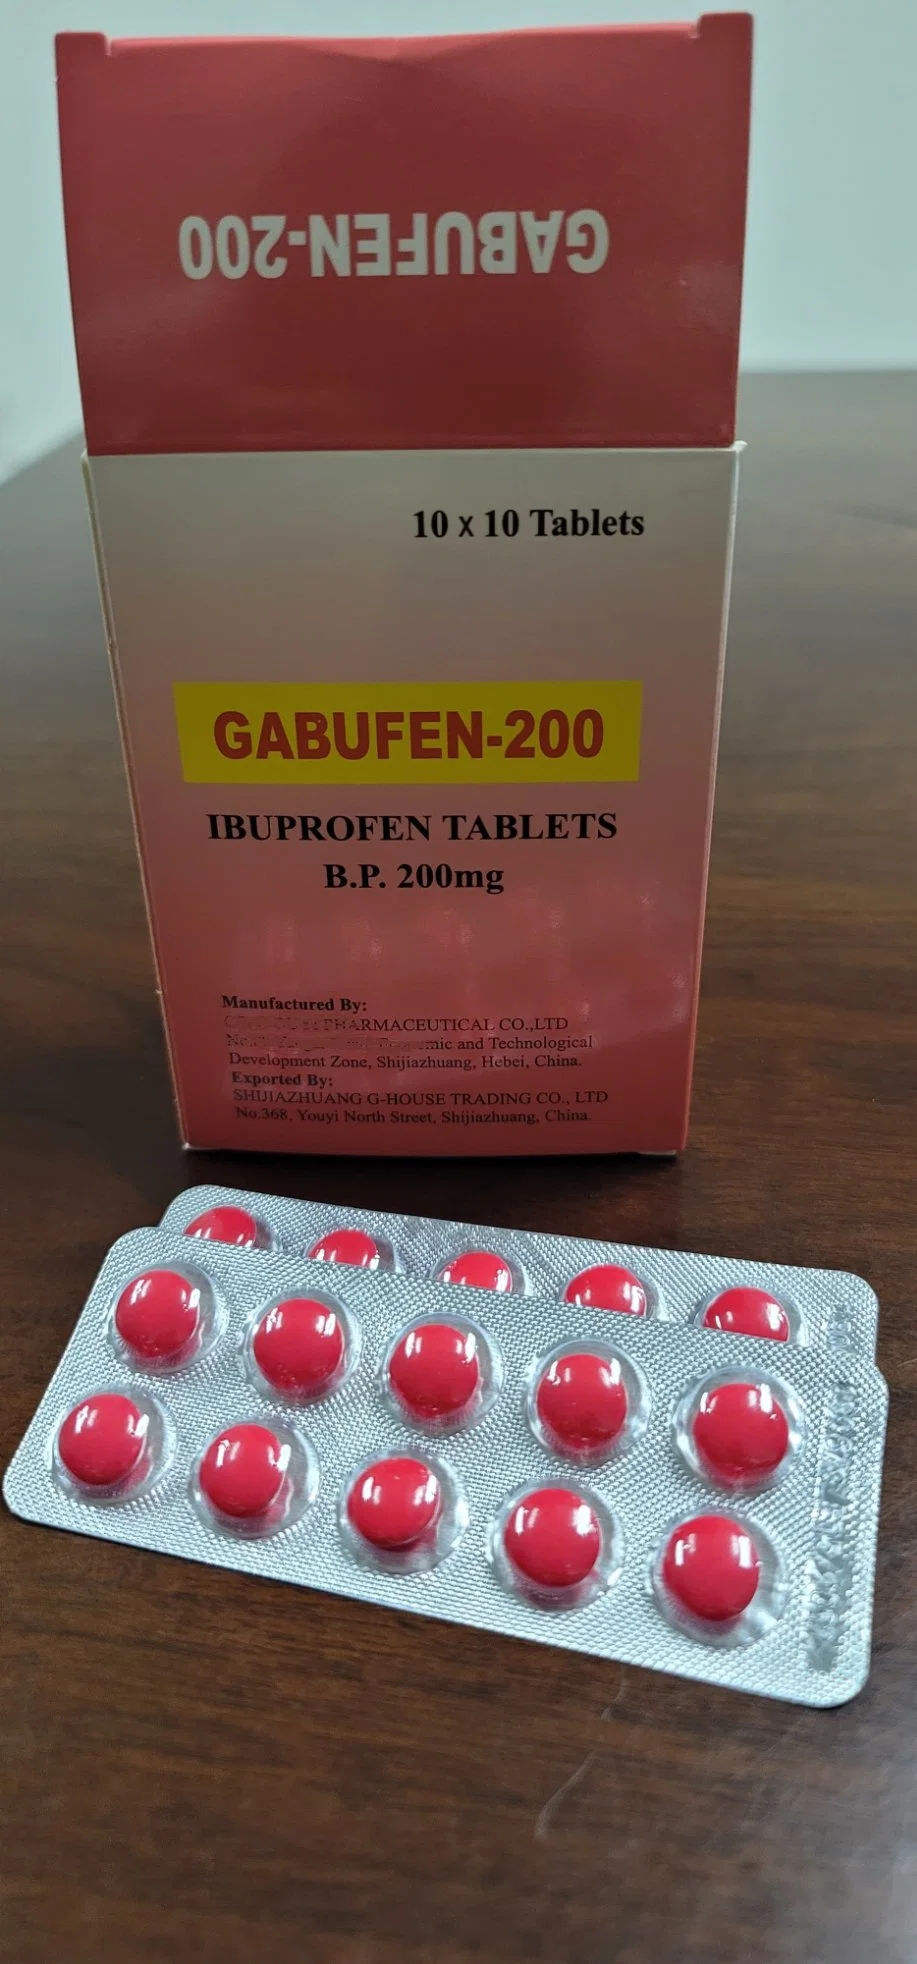 Ибупрофен таблетки 200mg высокого качества фармацевтических препаратов